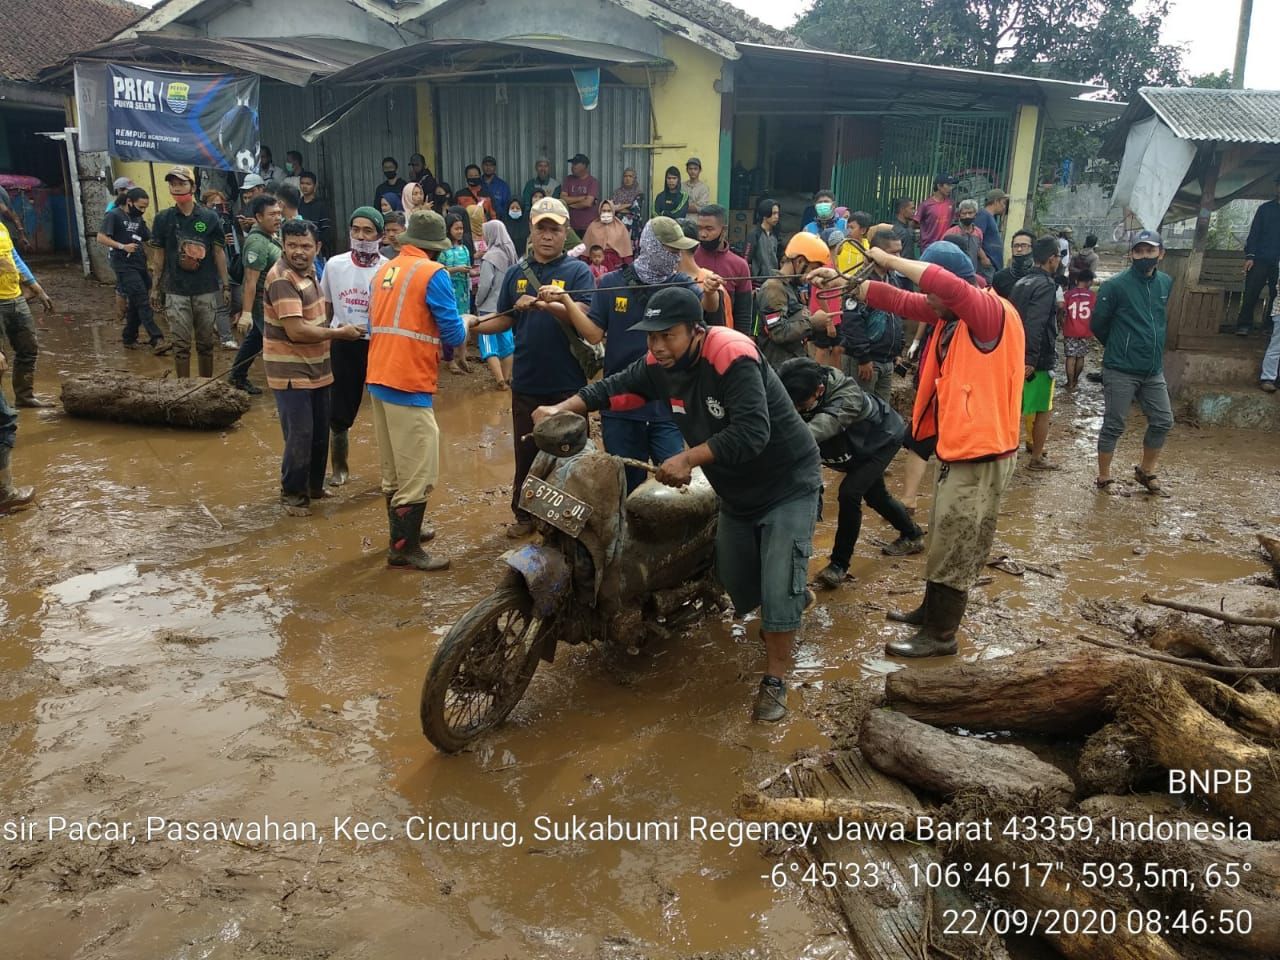 Petugas bersama masyarakat melakukan evakuasi harta benda di lokasi desa yang rusak diterjang banjir bandang (ZONABANTEN.com)